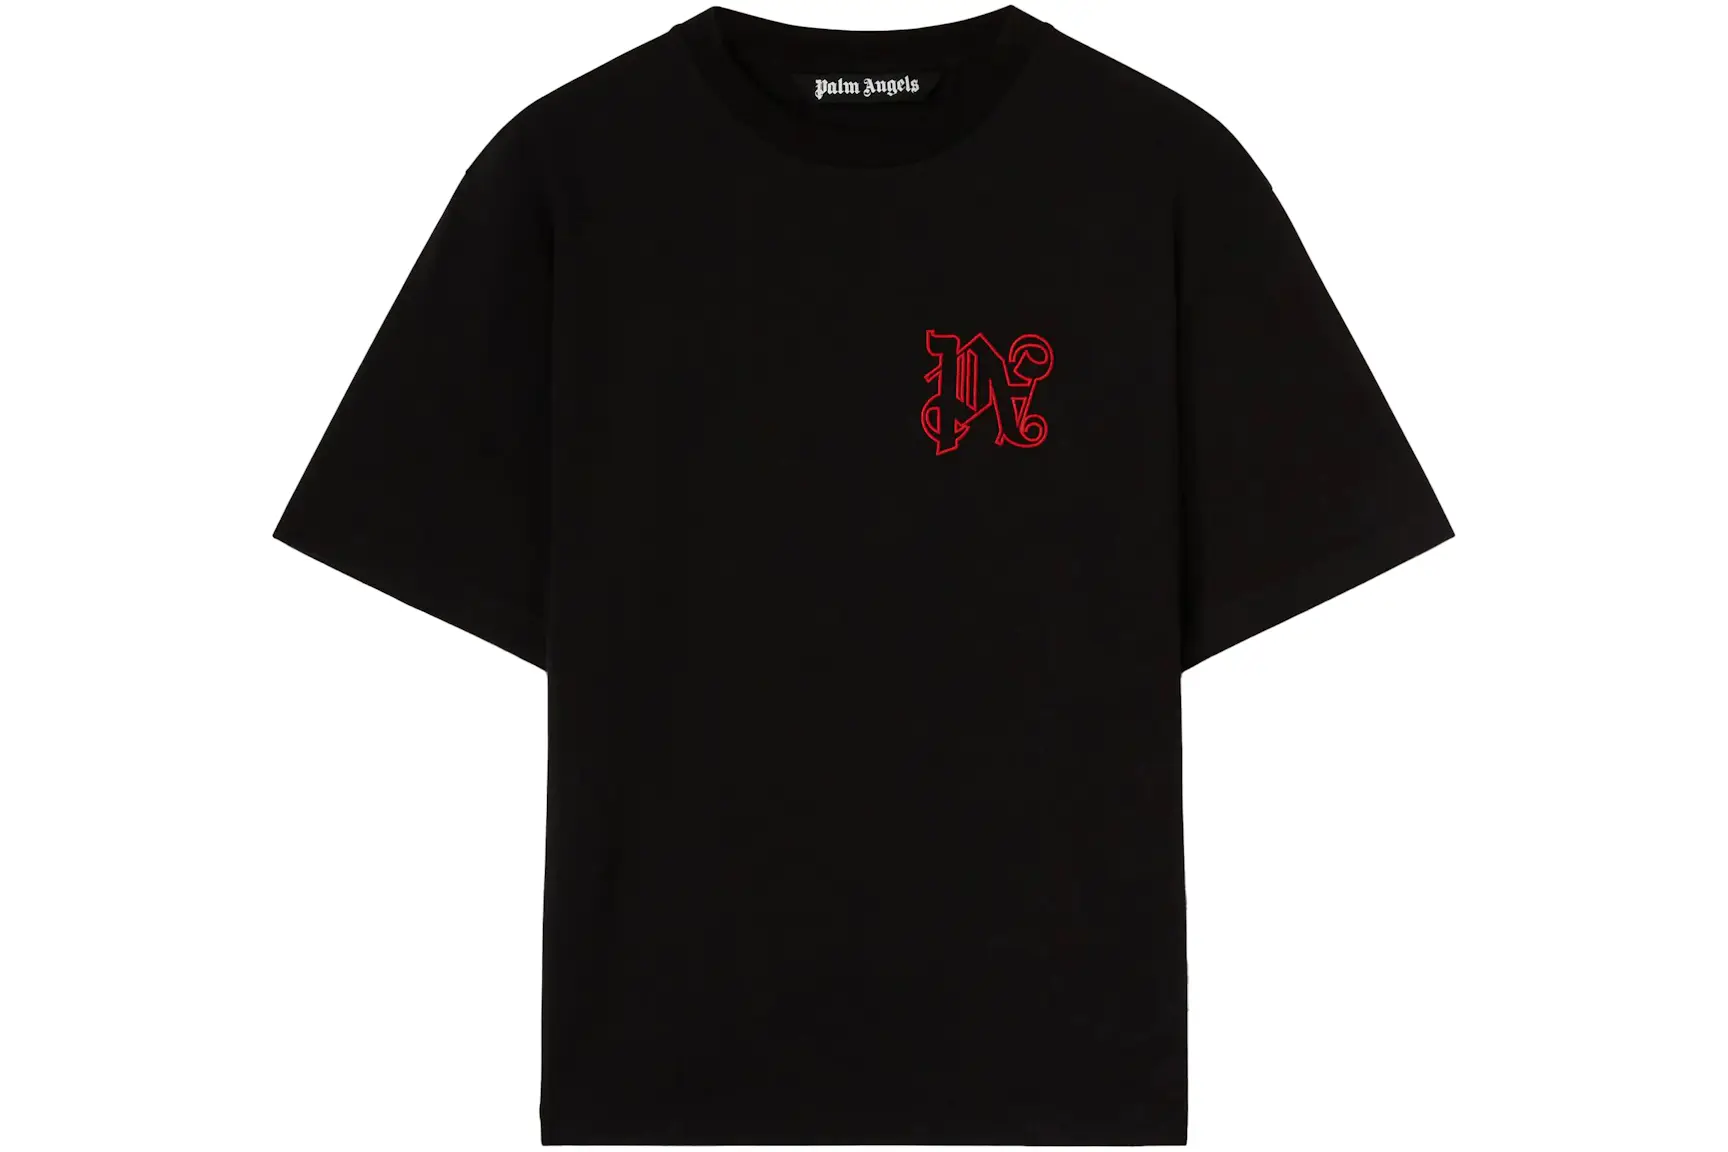 Palm Angels x Moneygram Haas F1 Team T-shirt Black/Red - SS23 - DE